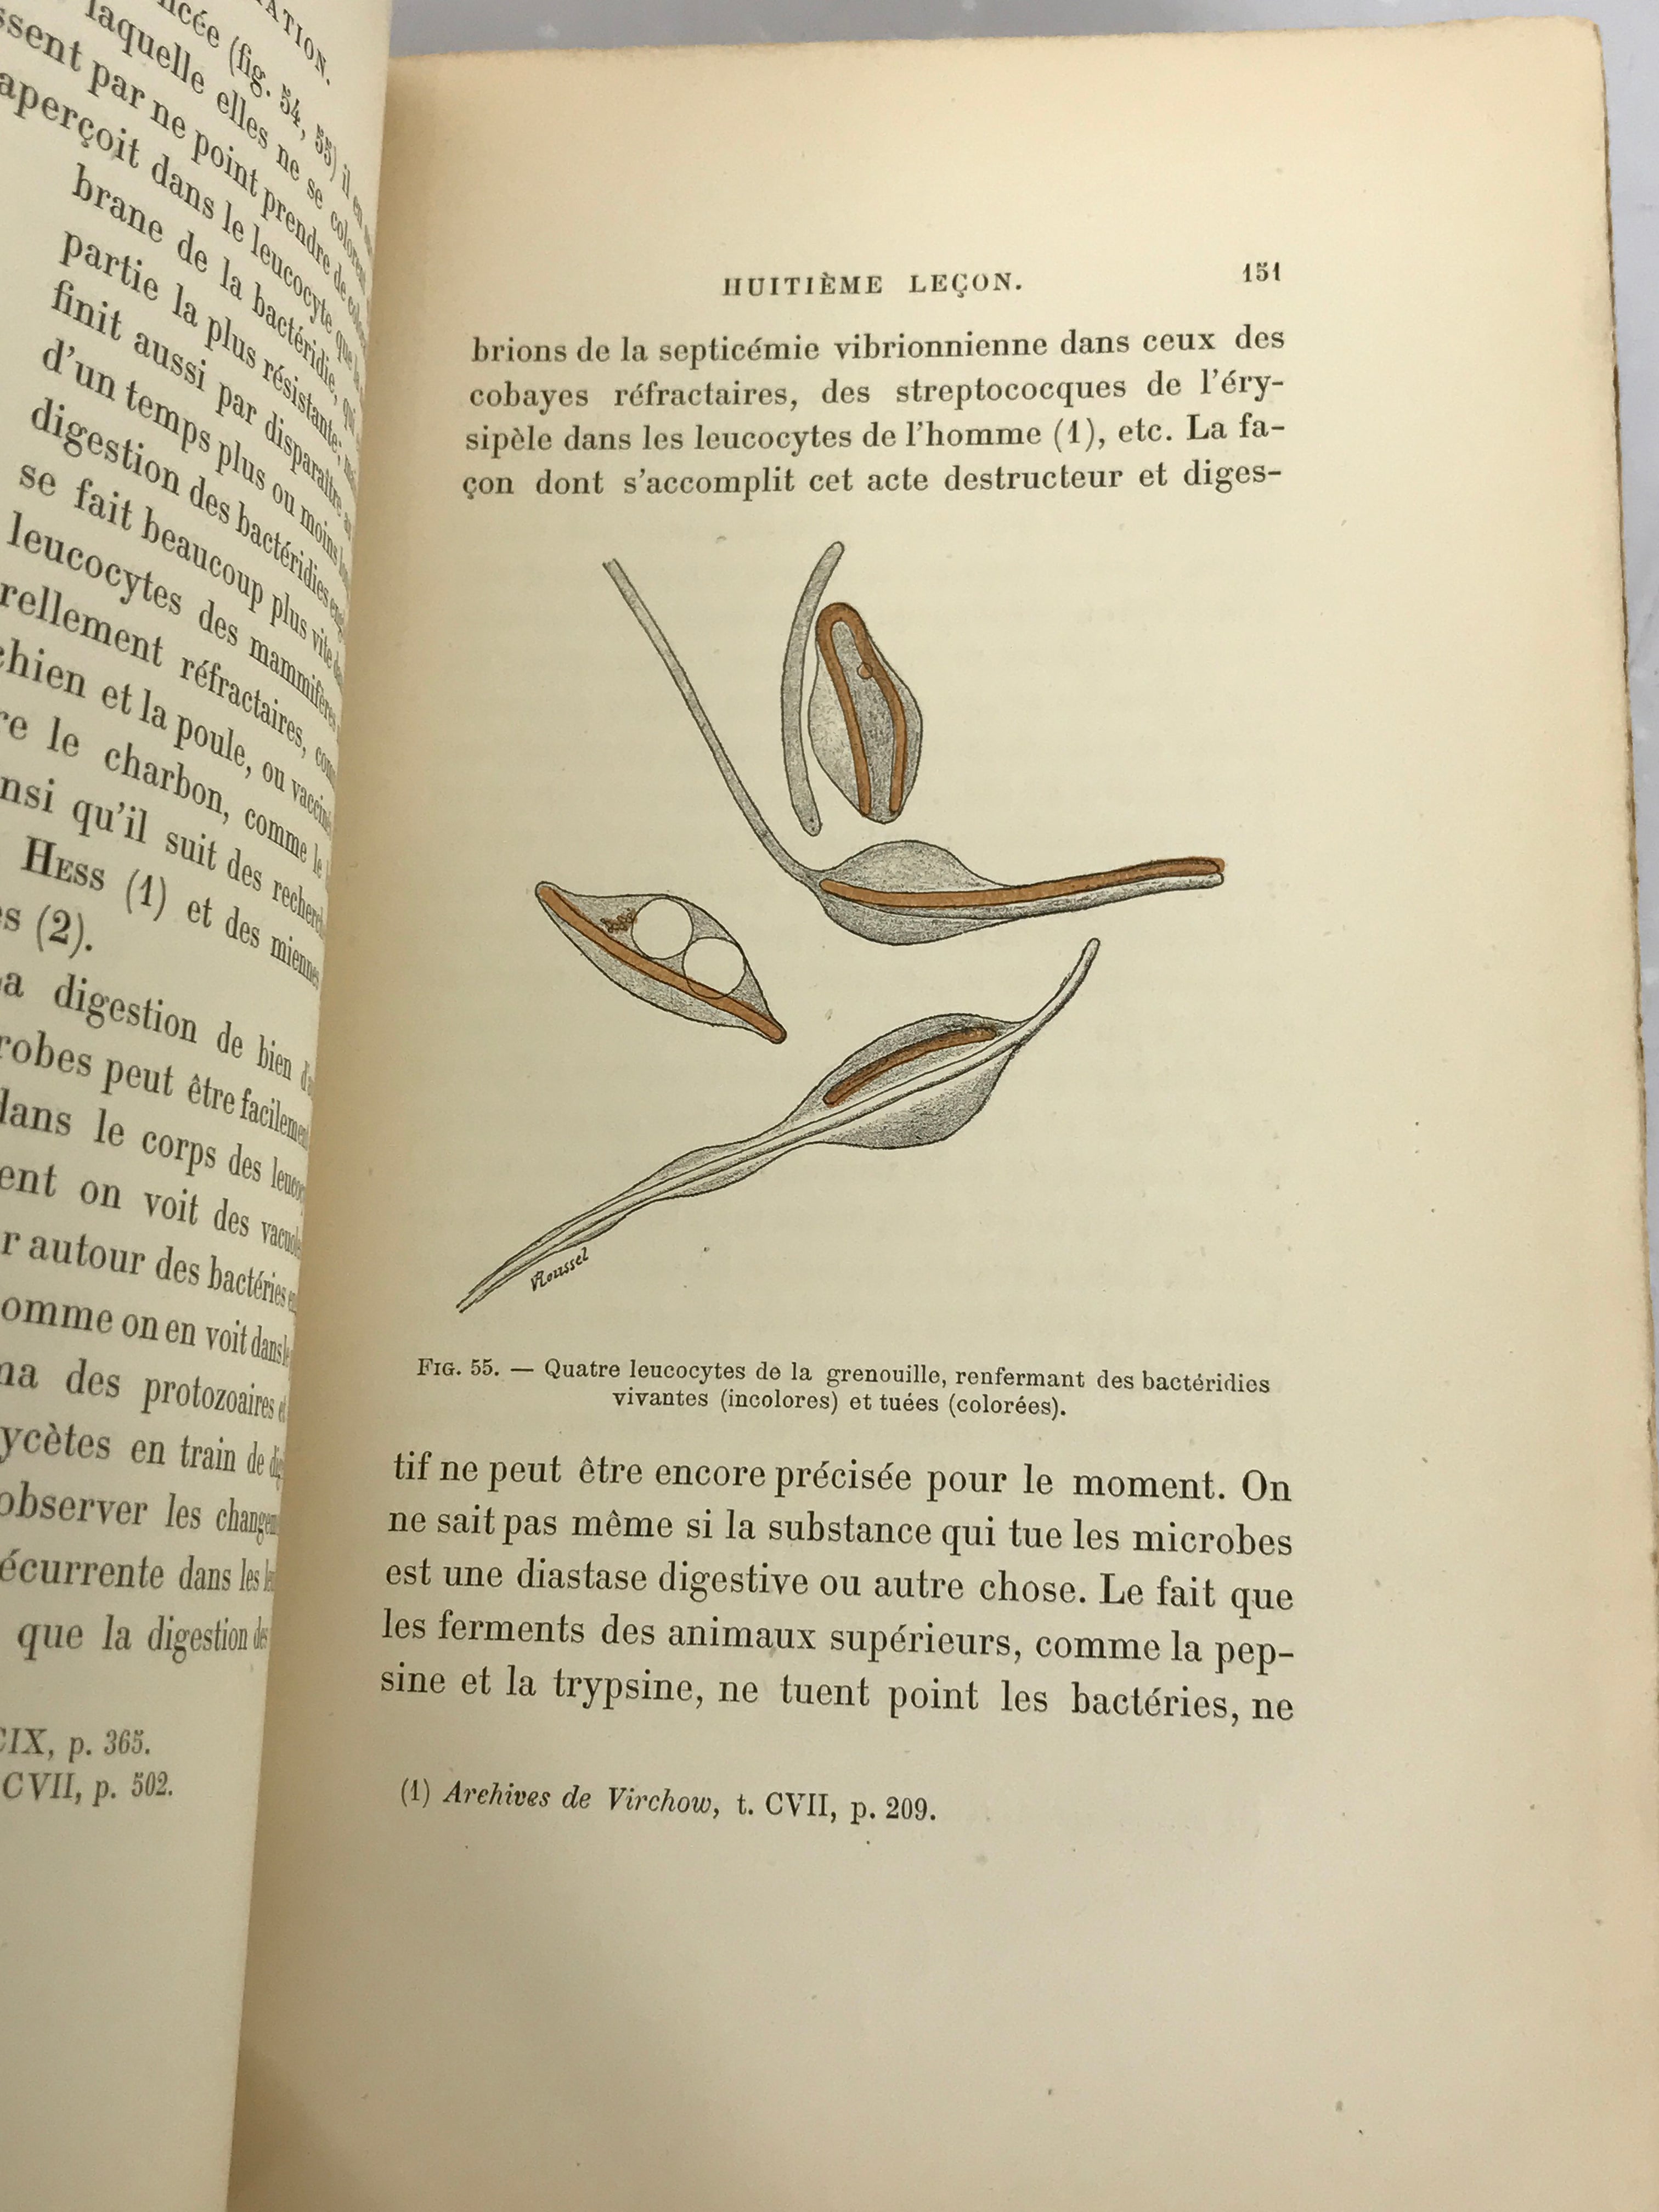 Lecons sur La Pathologie de L'Inflammation 1892 Text, Newer Paper Covers